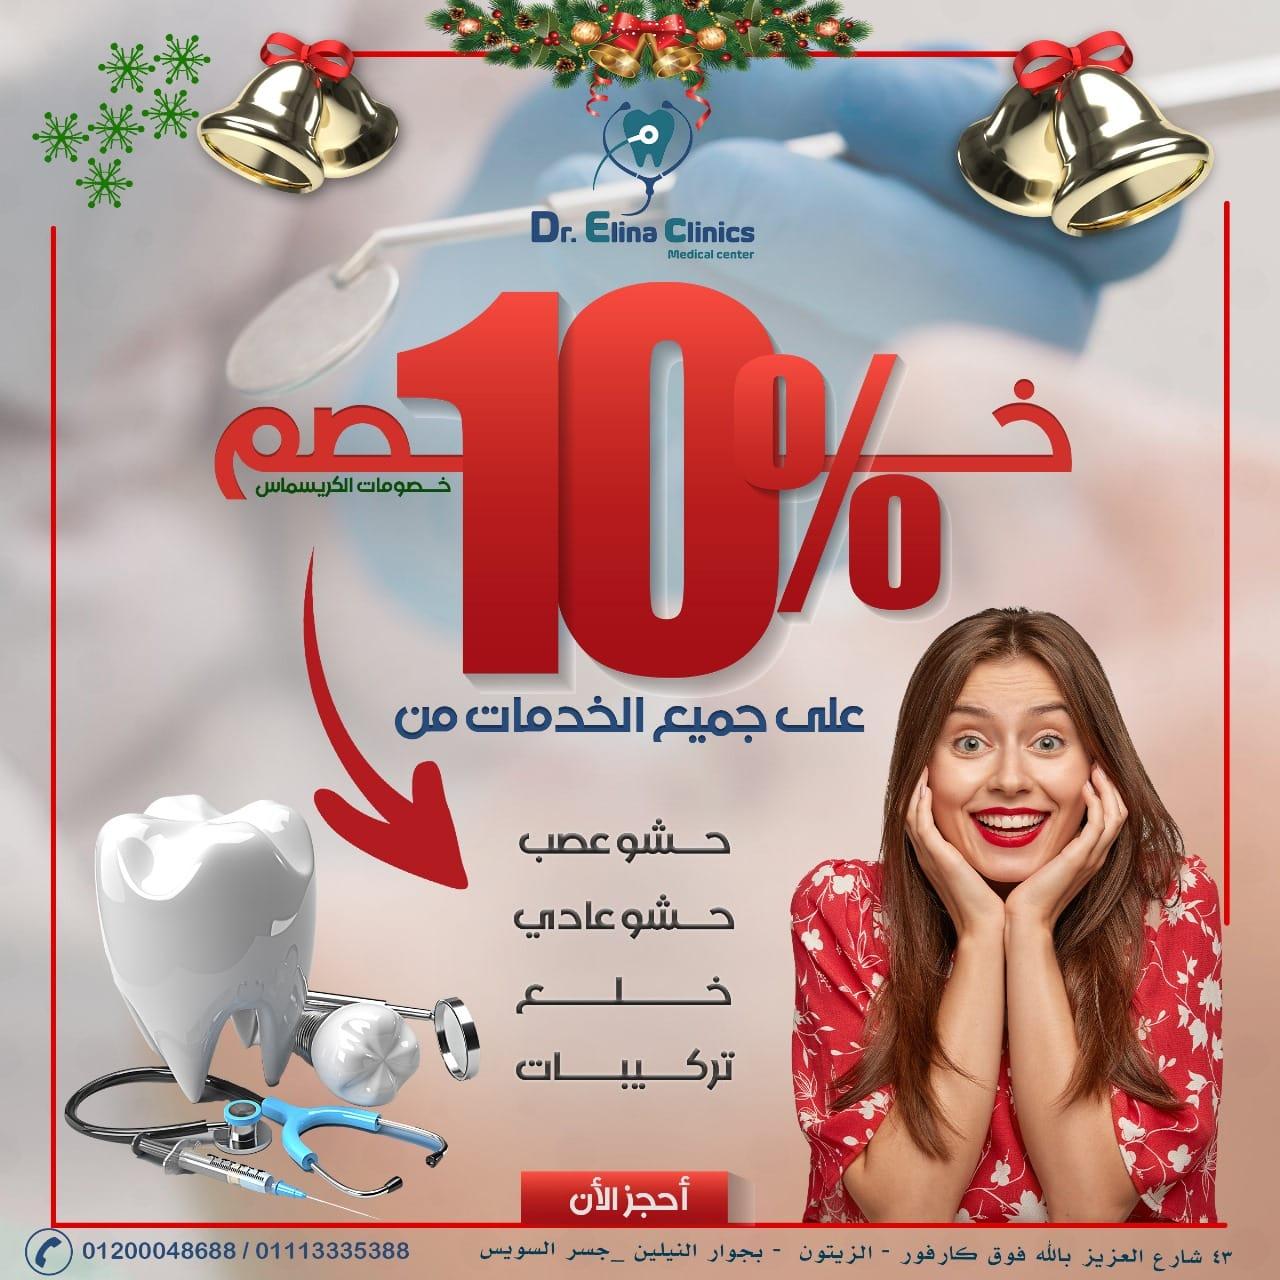 افضل مركز اسنان في القاهرة - مركز دكتورة ايلينا  396139827